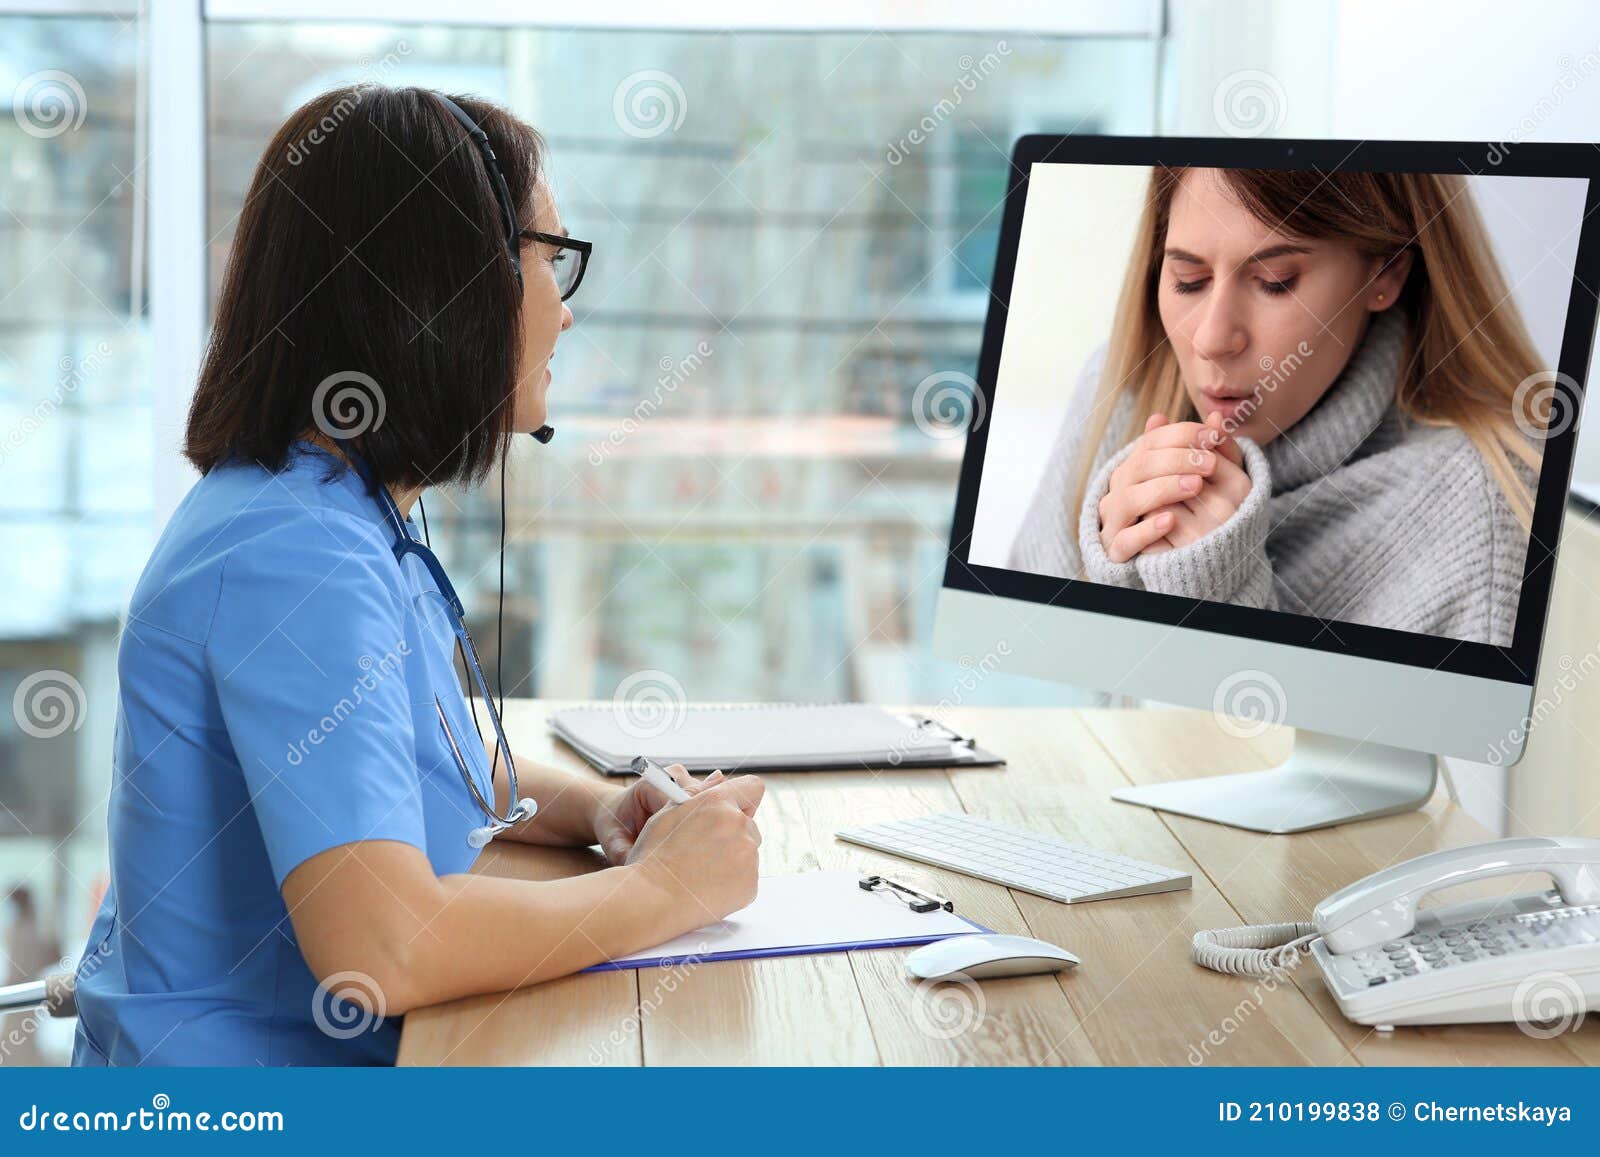 Hotline Service. Doctor Consulting Patient Online Via Computer Indoors